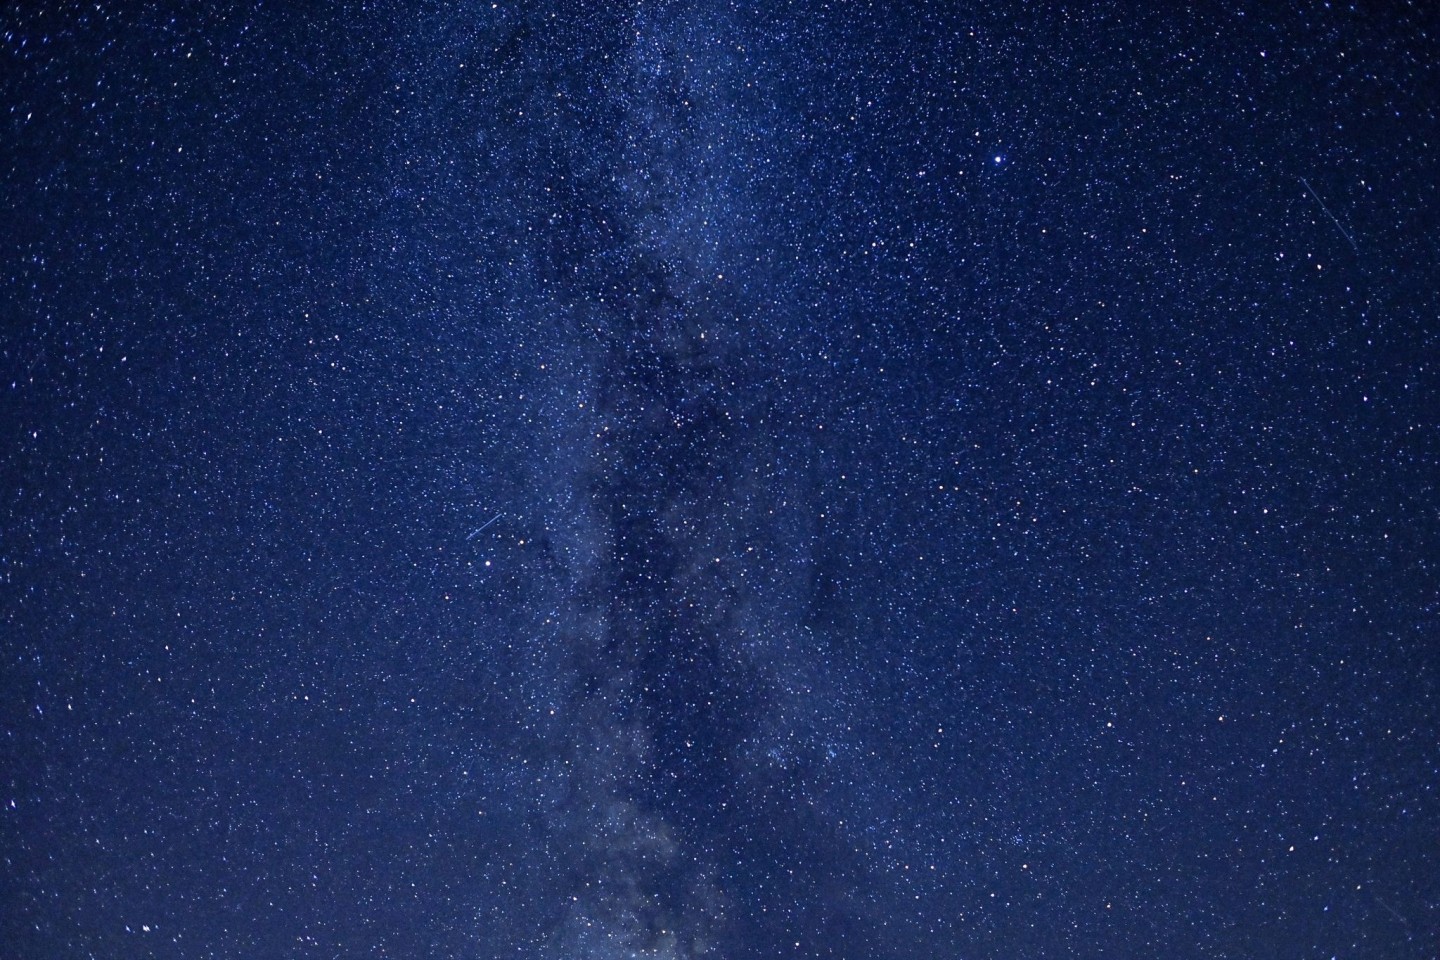 Ein Teil der Milchstraße ist am Nachthimmel zu sehen. (Archivbild)